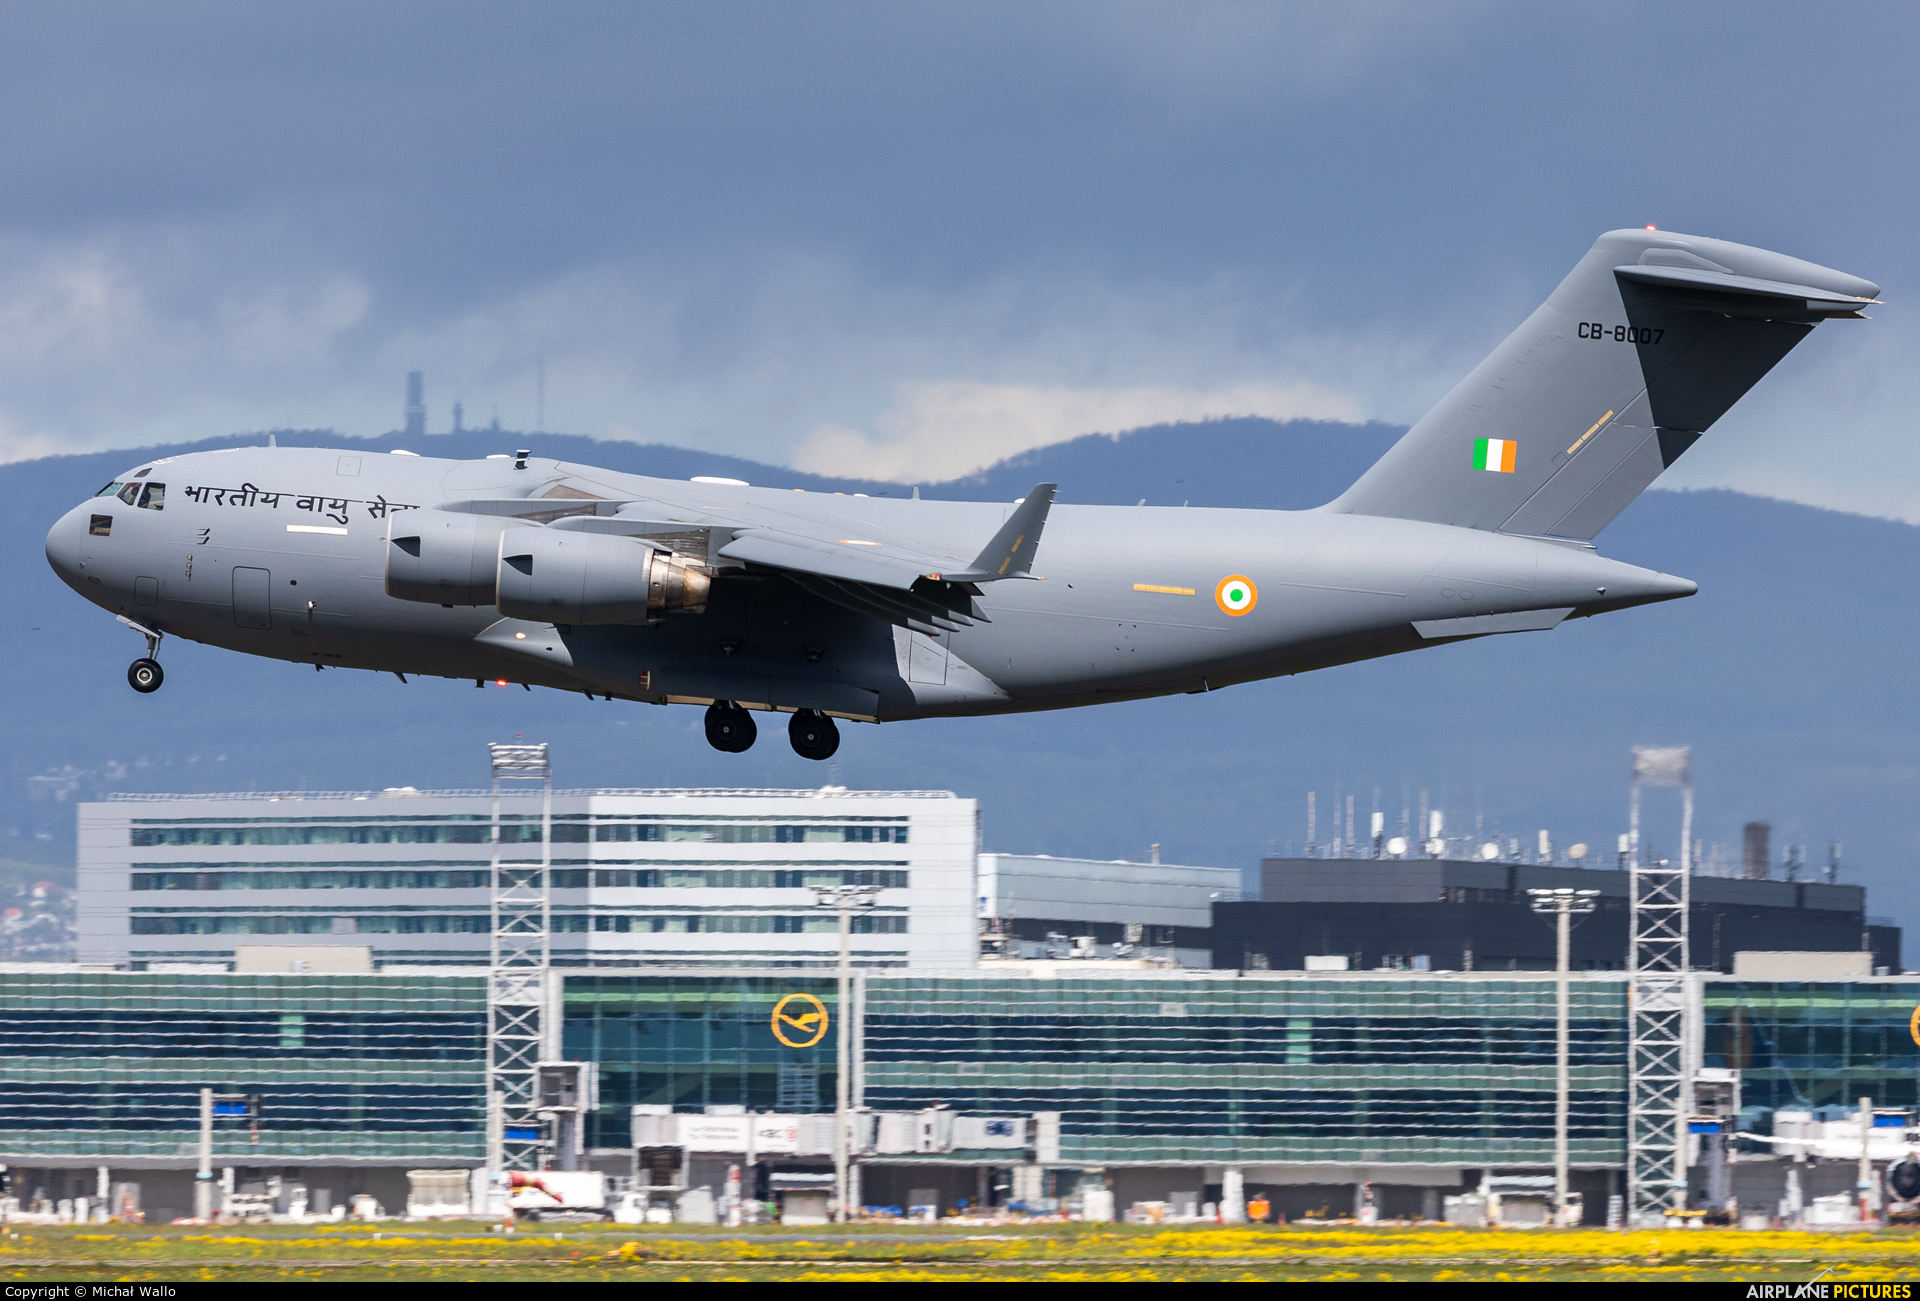 India - Air Force CB-8007 aircraft at Frankfurt